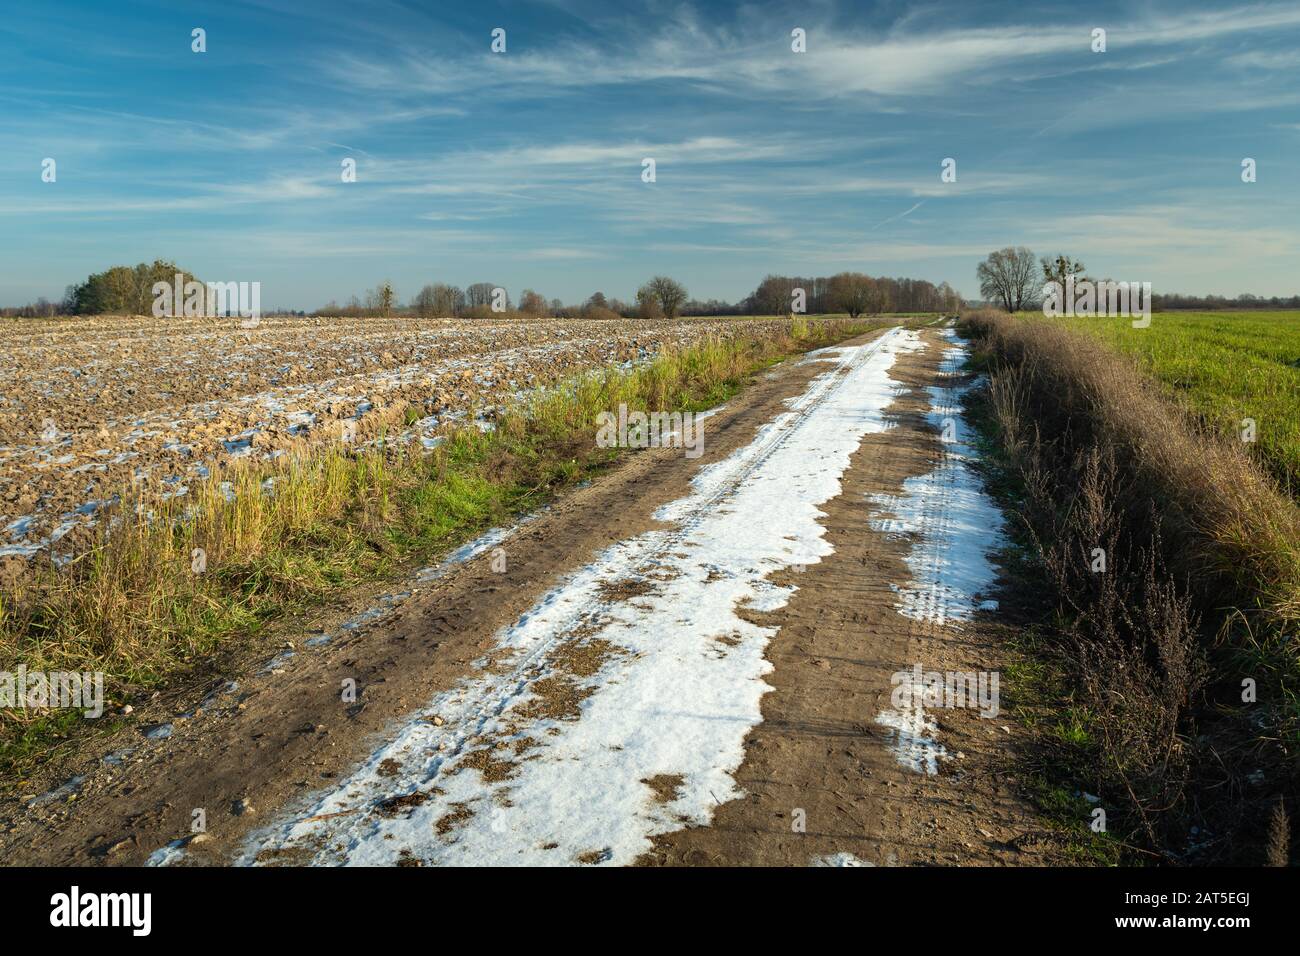 Neige sur une route de terre à travers les champs, l'horizon et les nuages sur un ciel bleu Banque D'Images